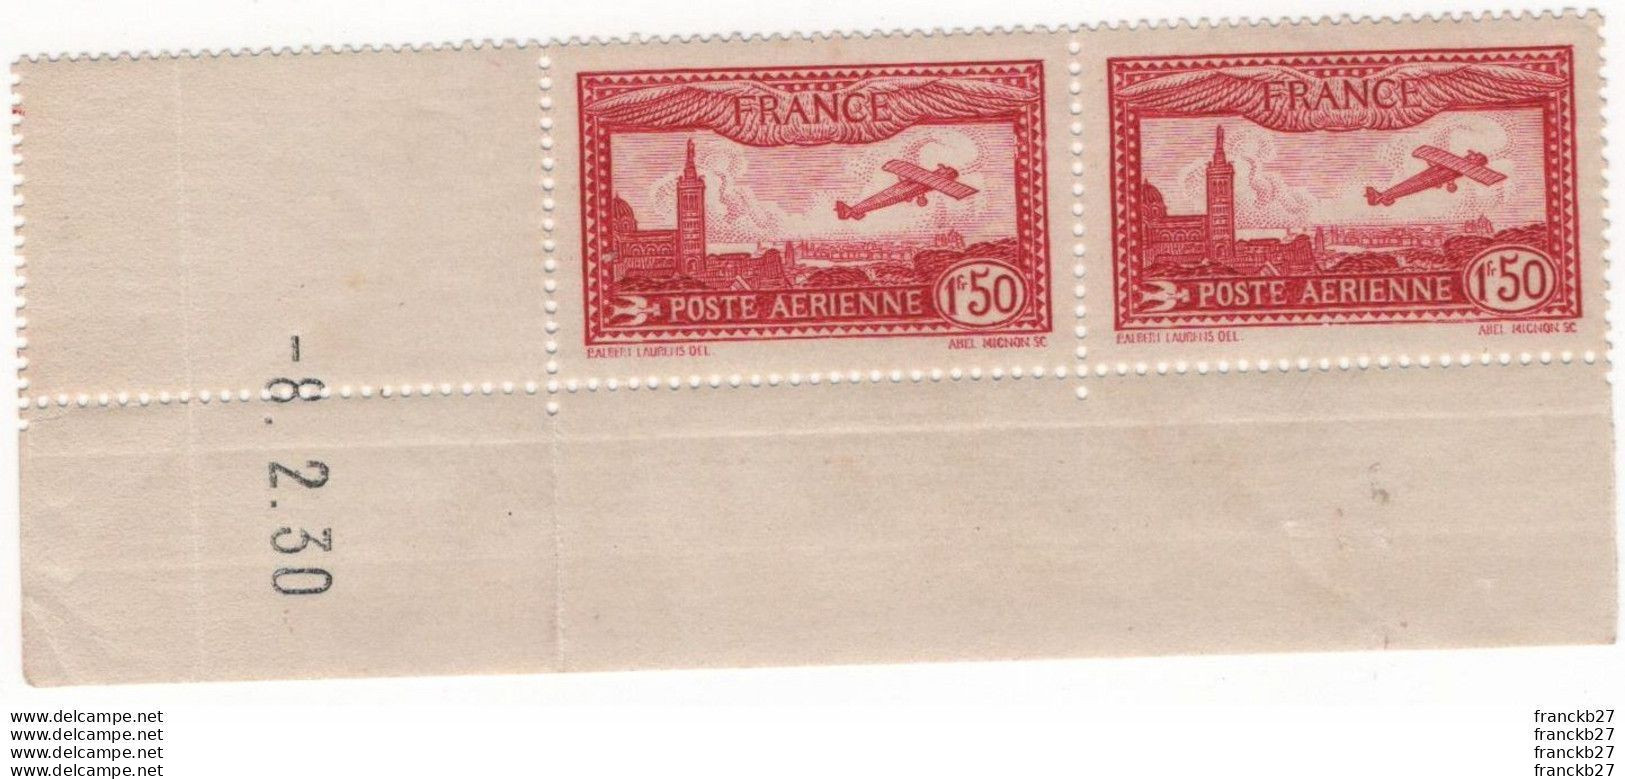 France Poste Aérienne - YT 5 - Avion Survolant Marseille 1 Fr 50 - Bloc De Deux Timbres Coins Datés - 1930 - 1927-1959 Ungebraucht